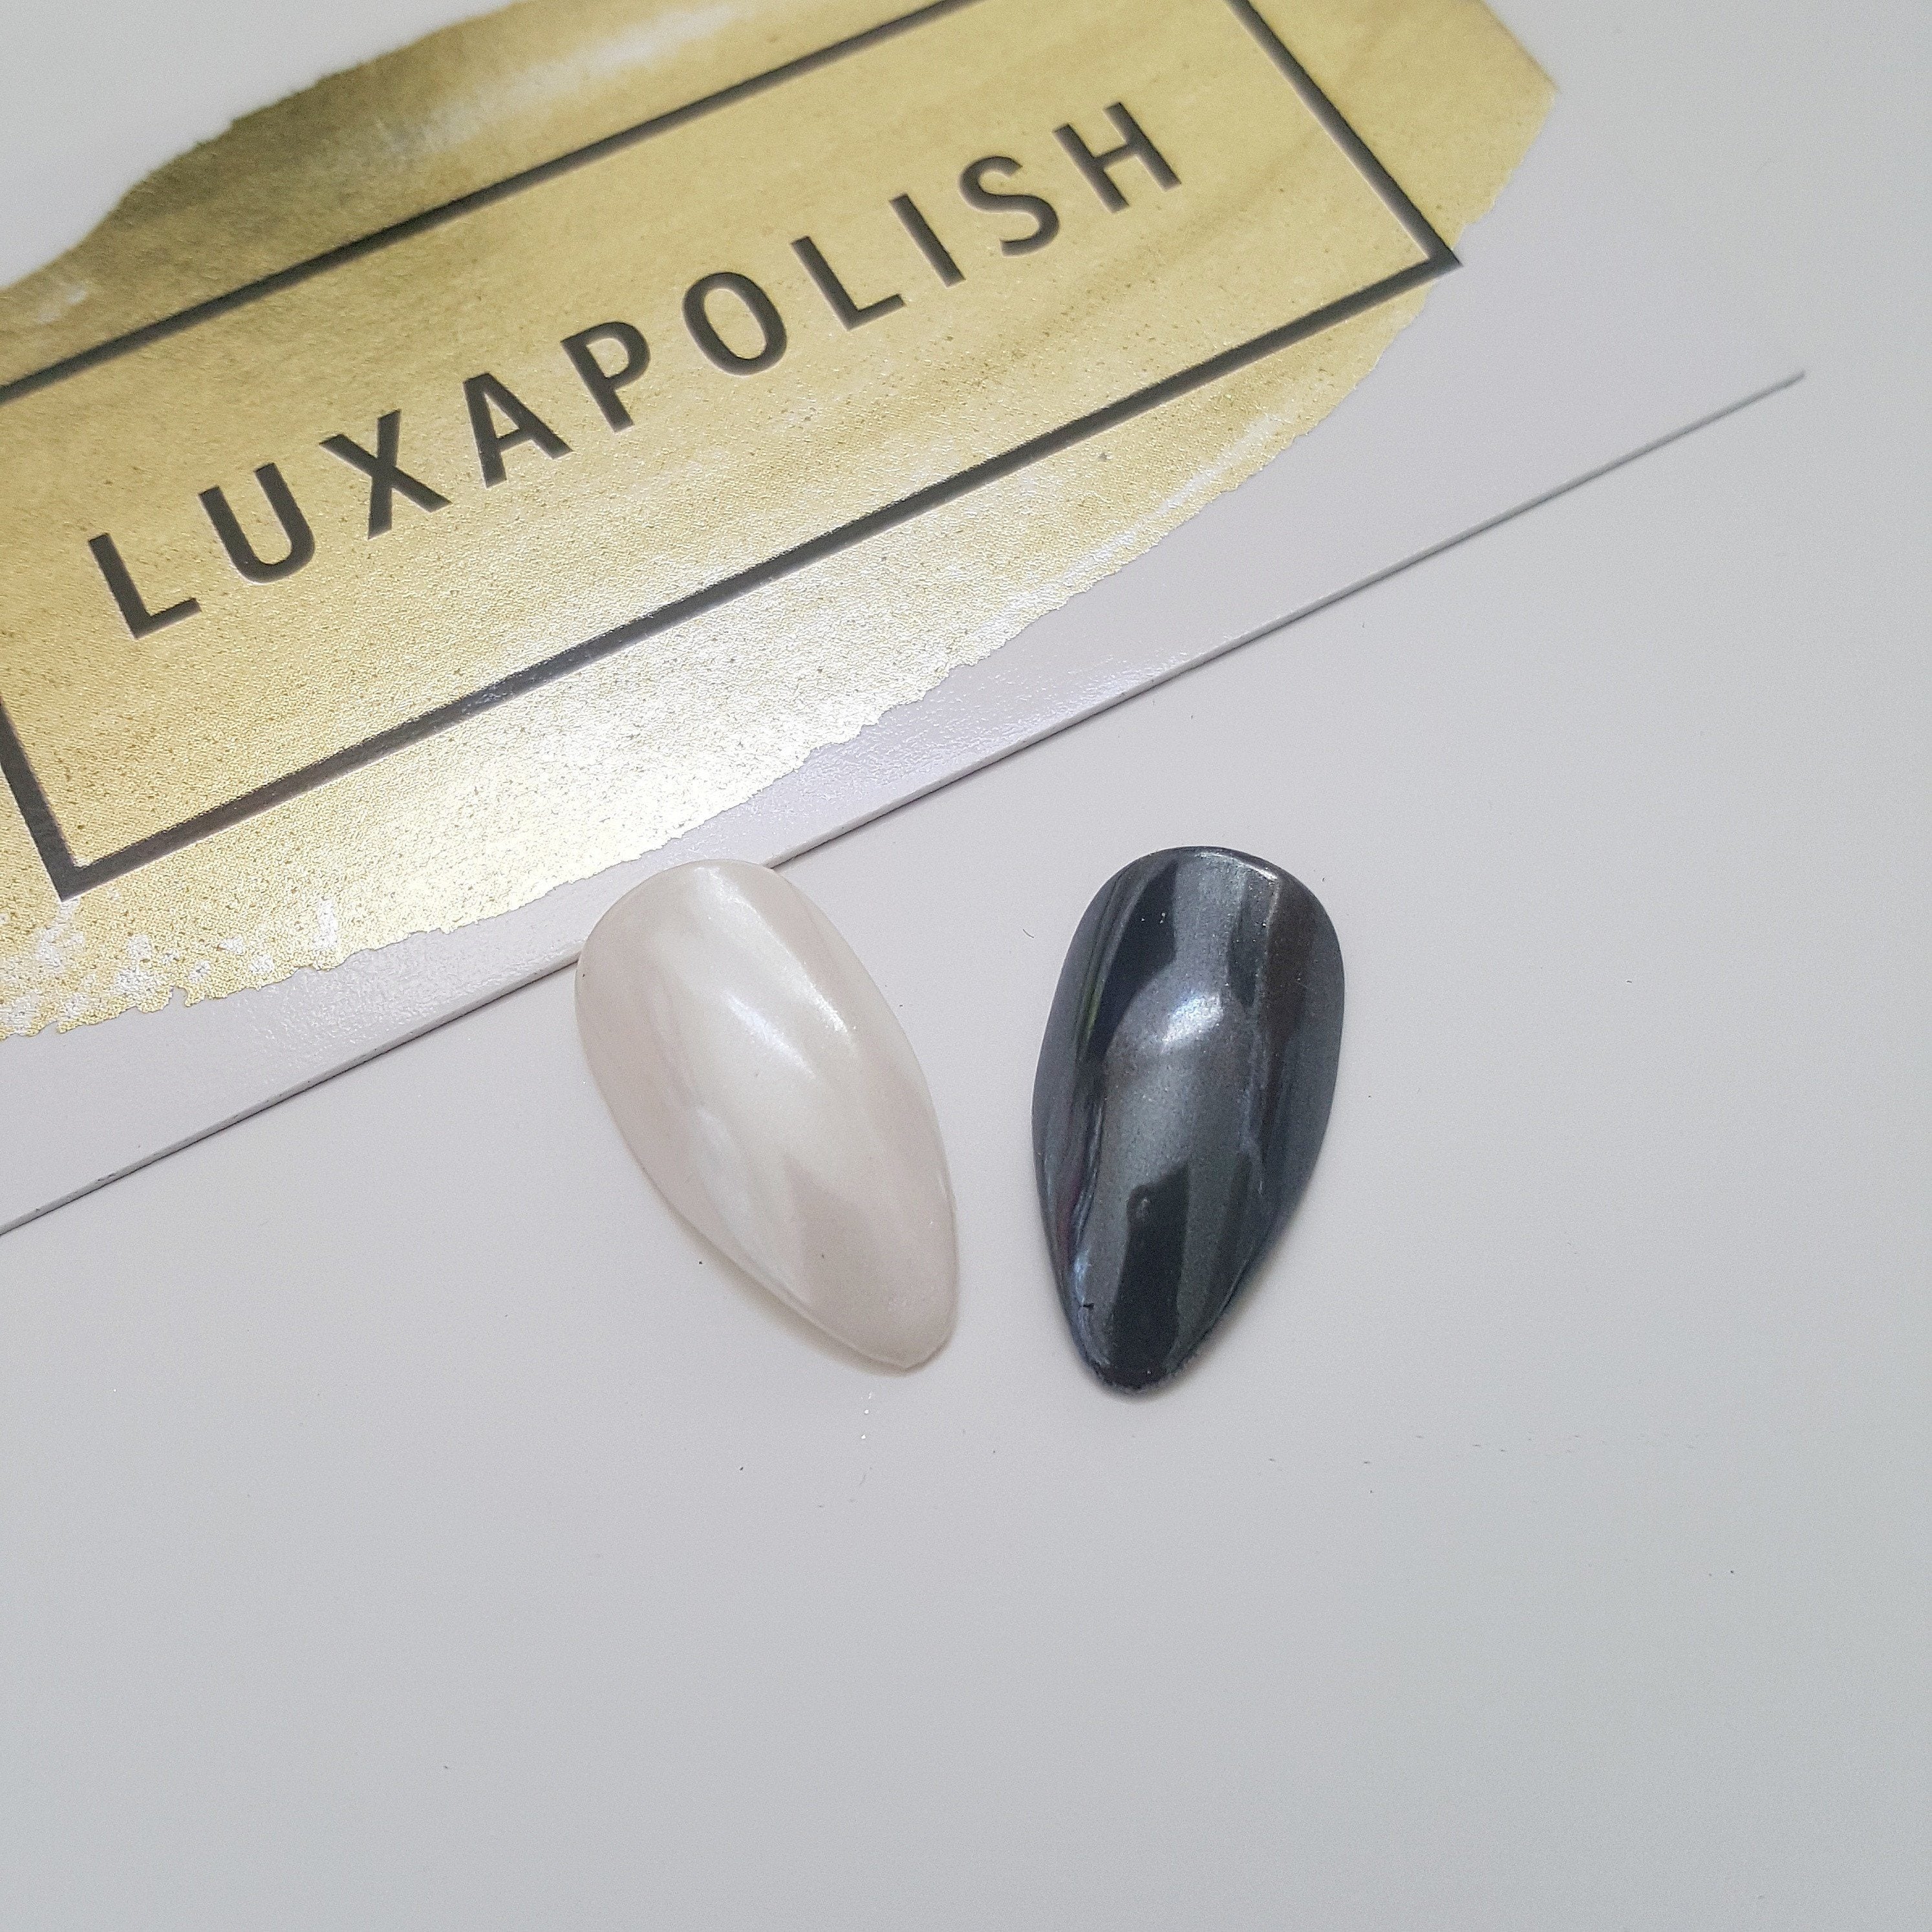 Luxapolish White Chrome